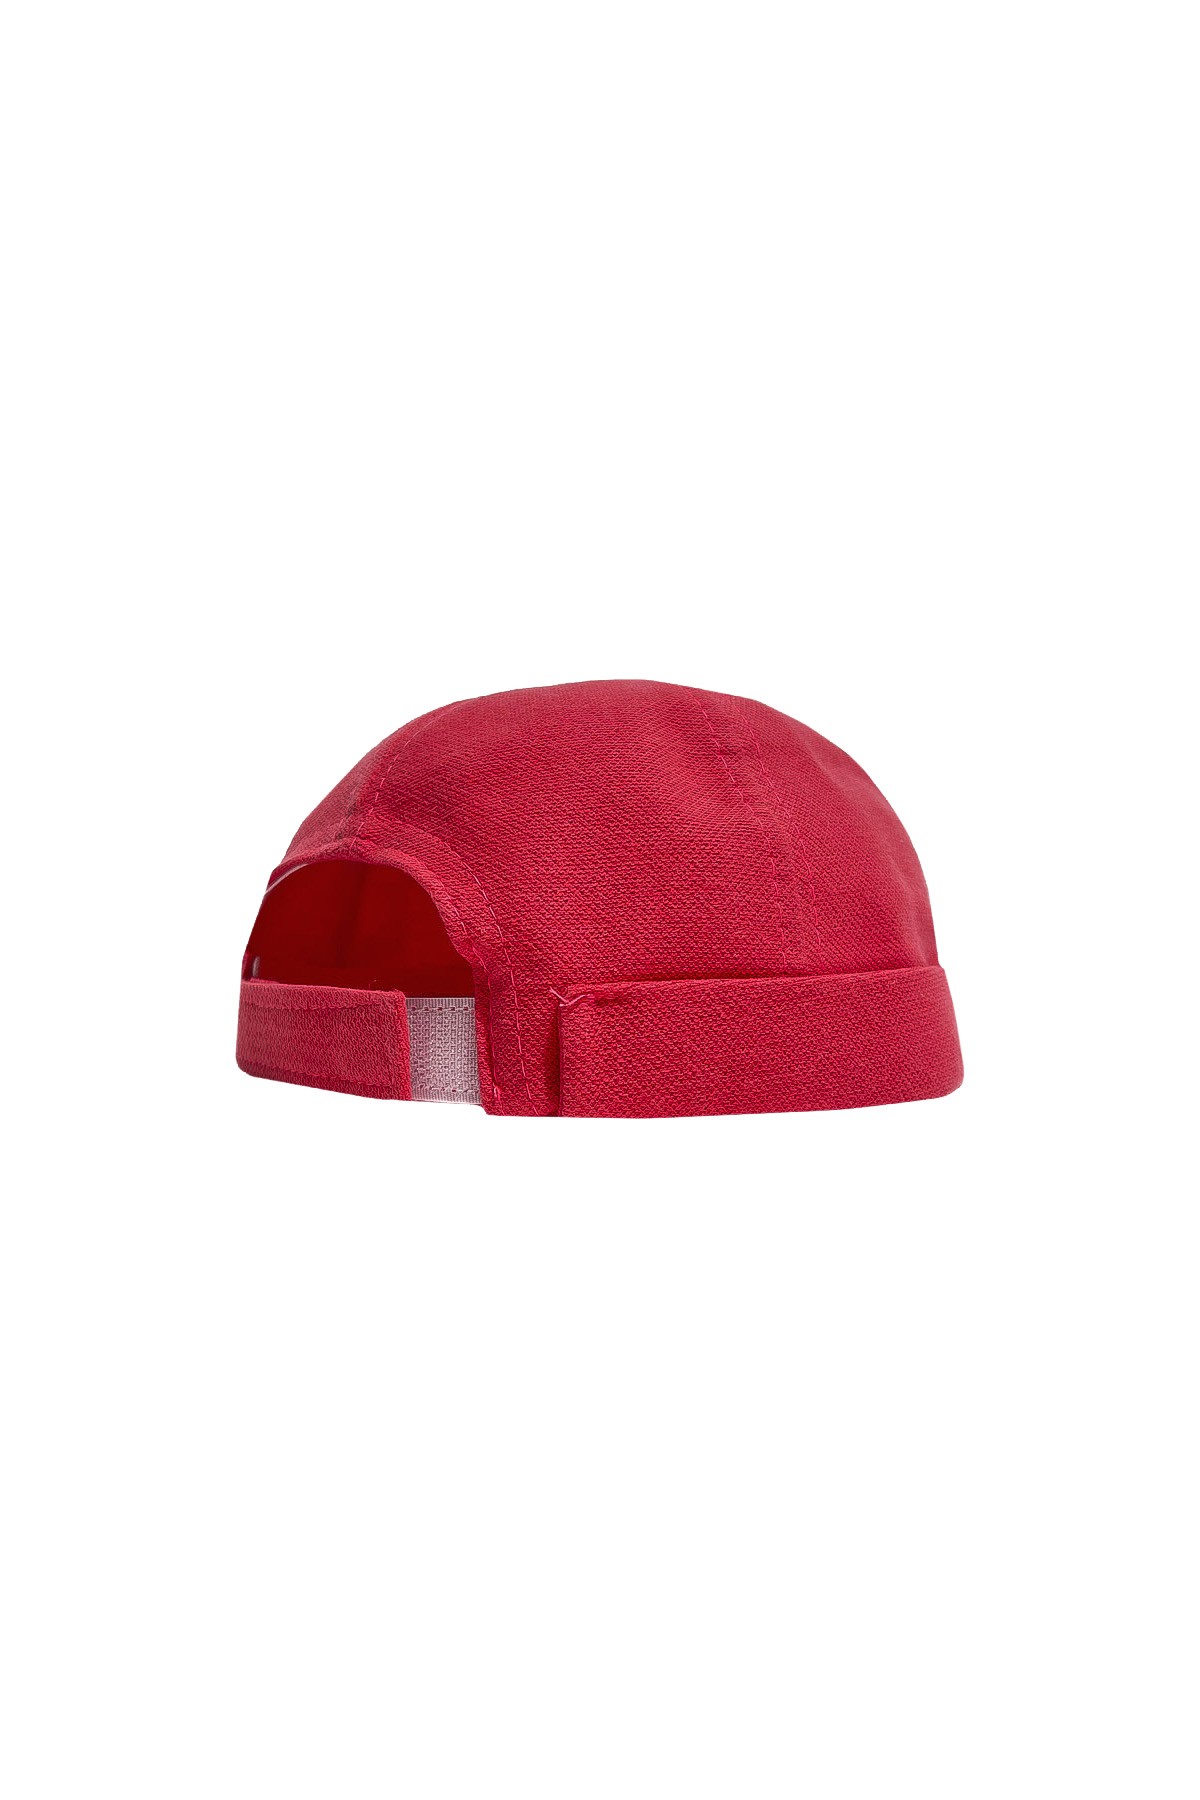 Nuo - قبعة - وردي